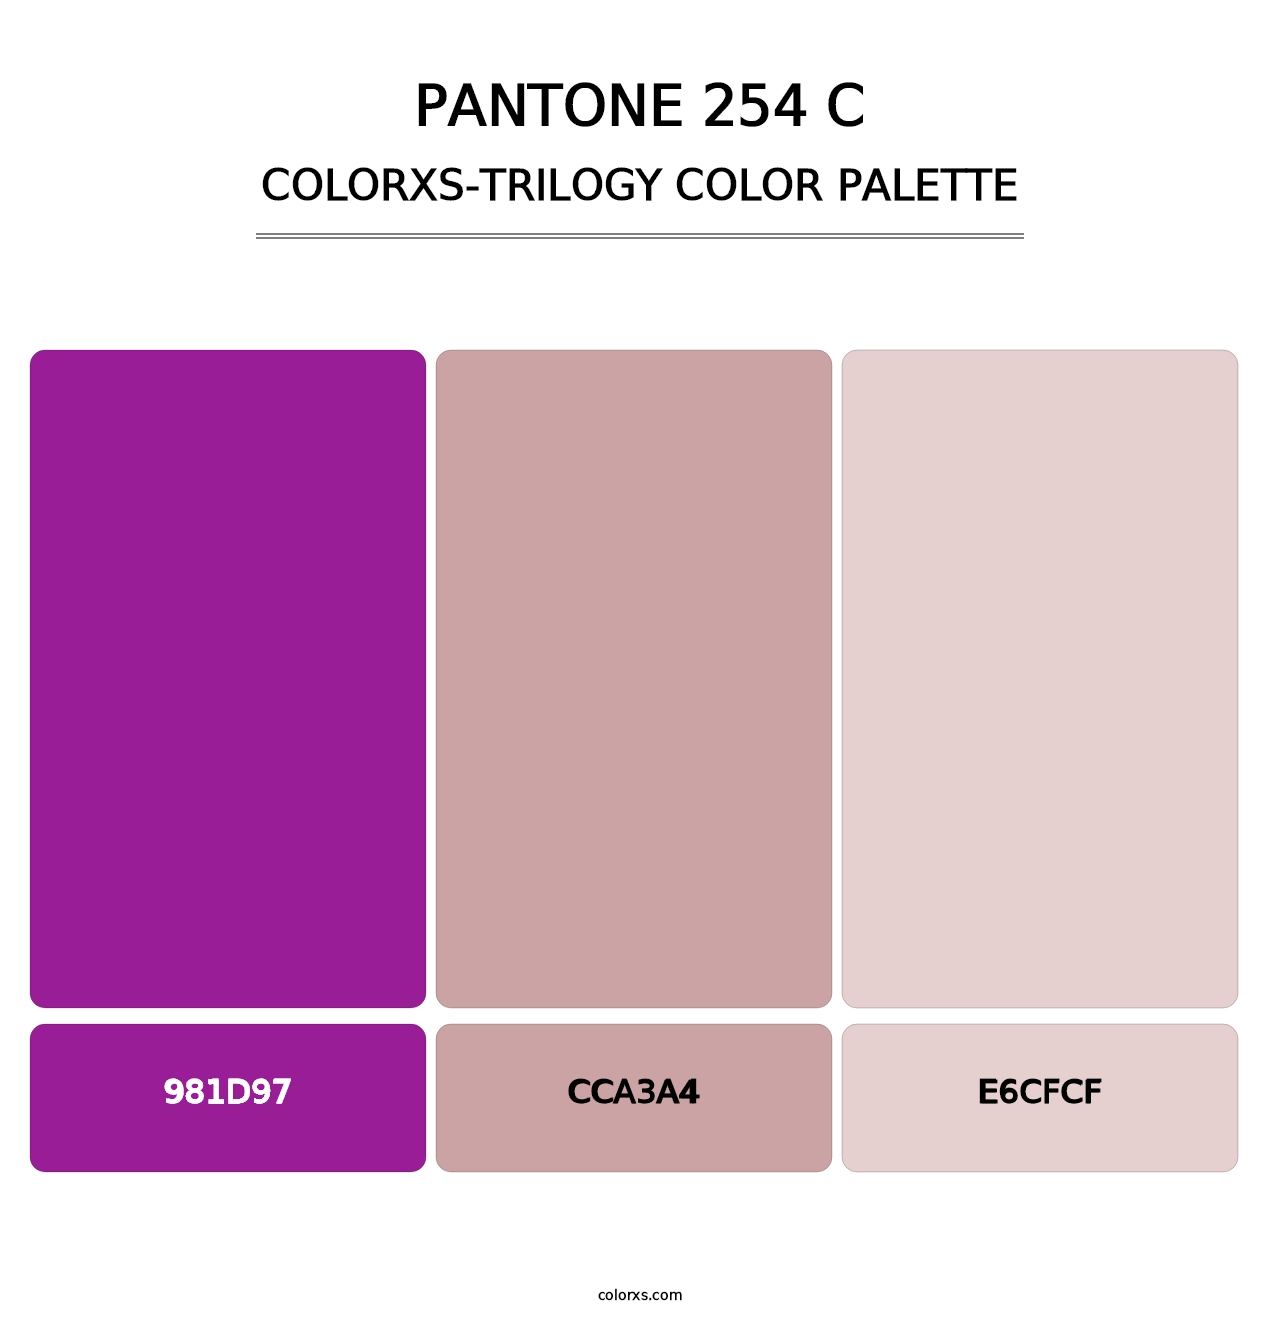 PANTONE 254 C - Colorxs Trilogy Palette